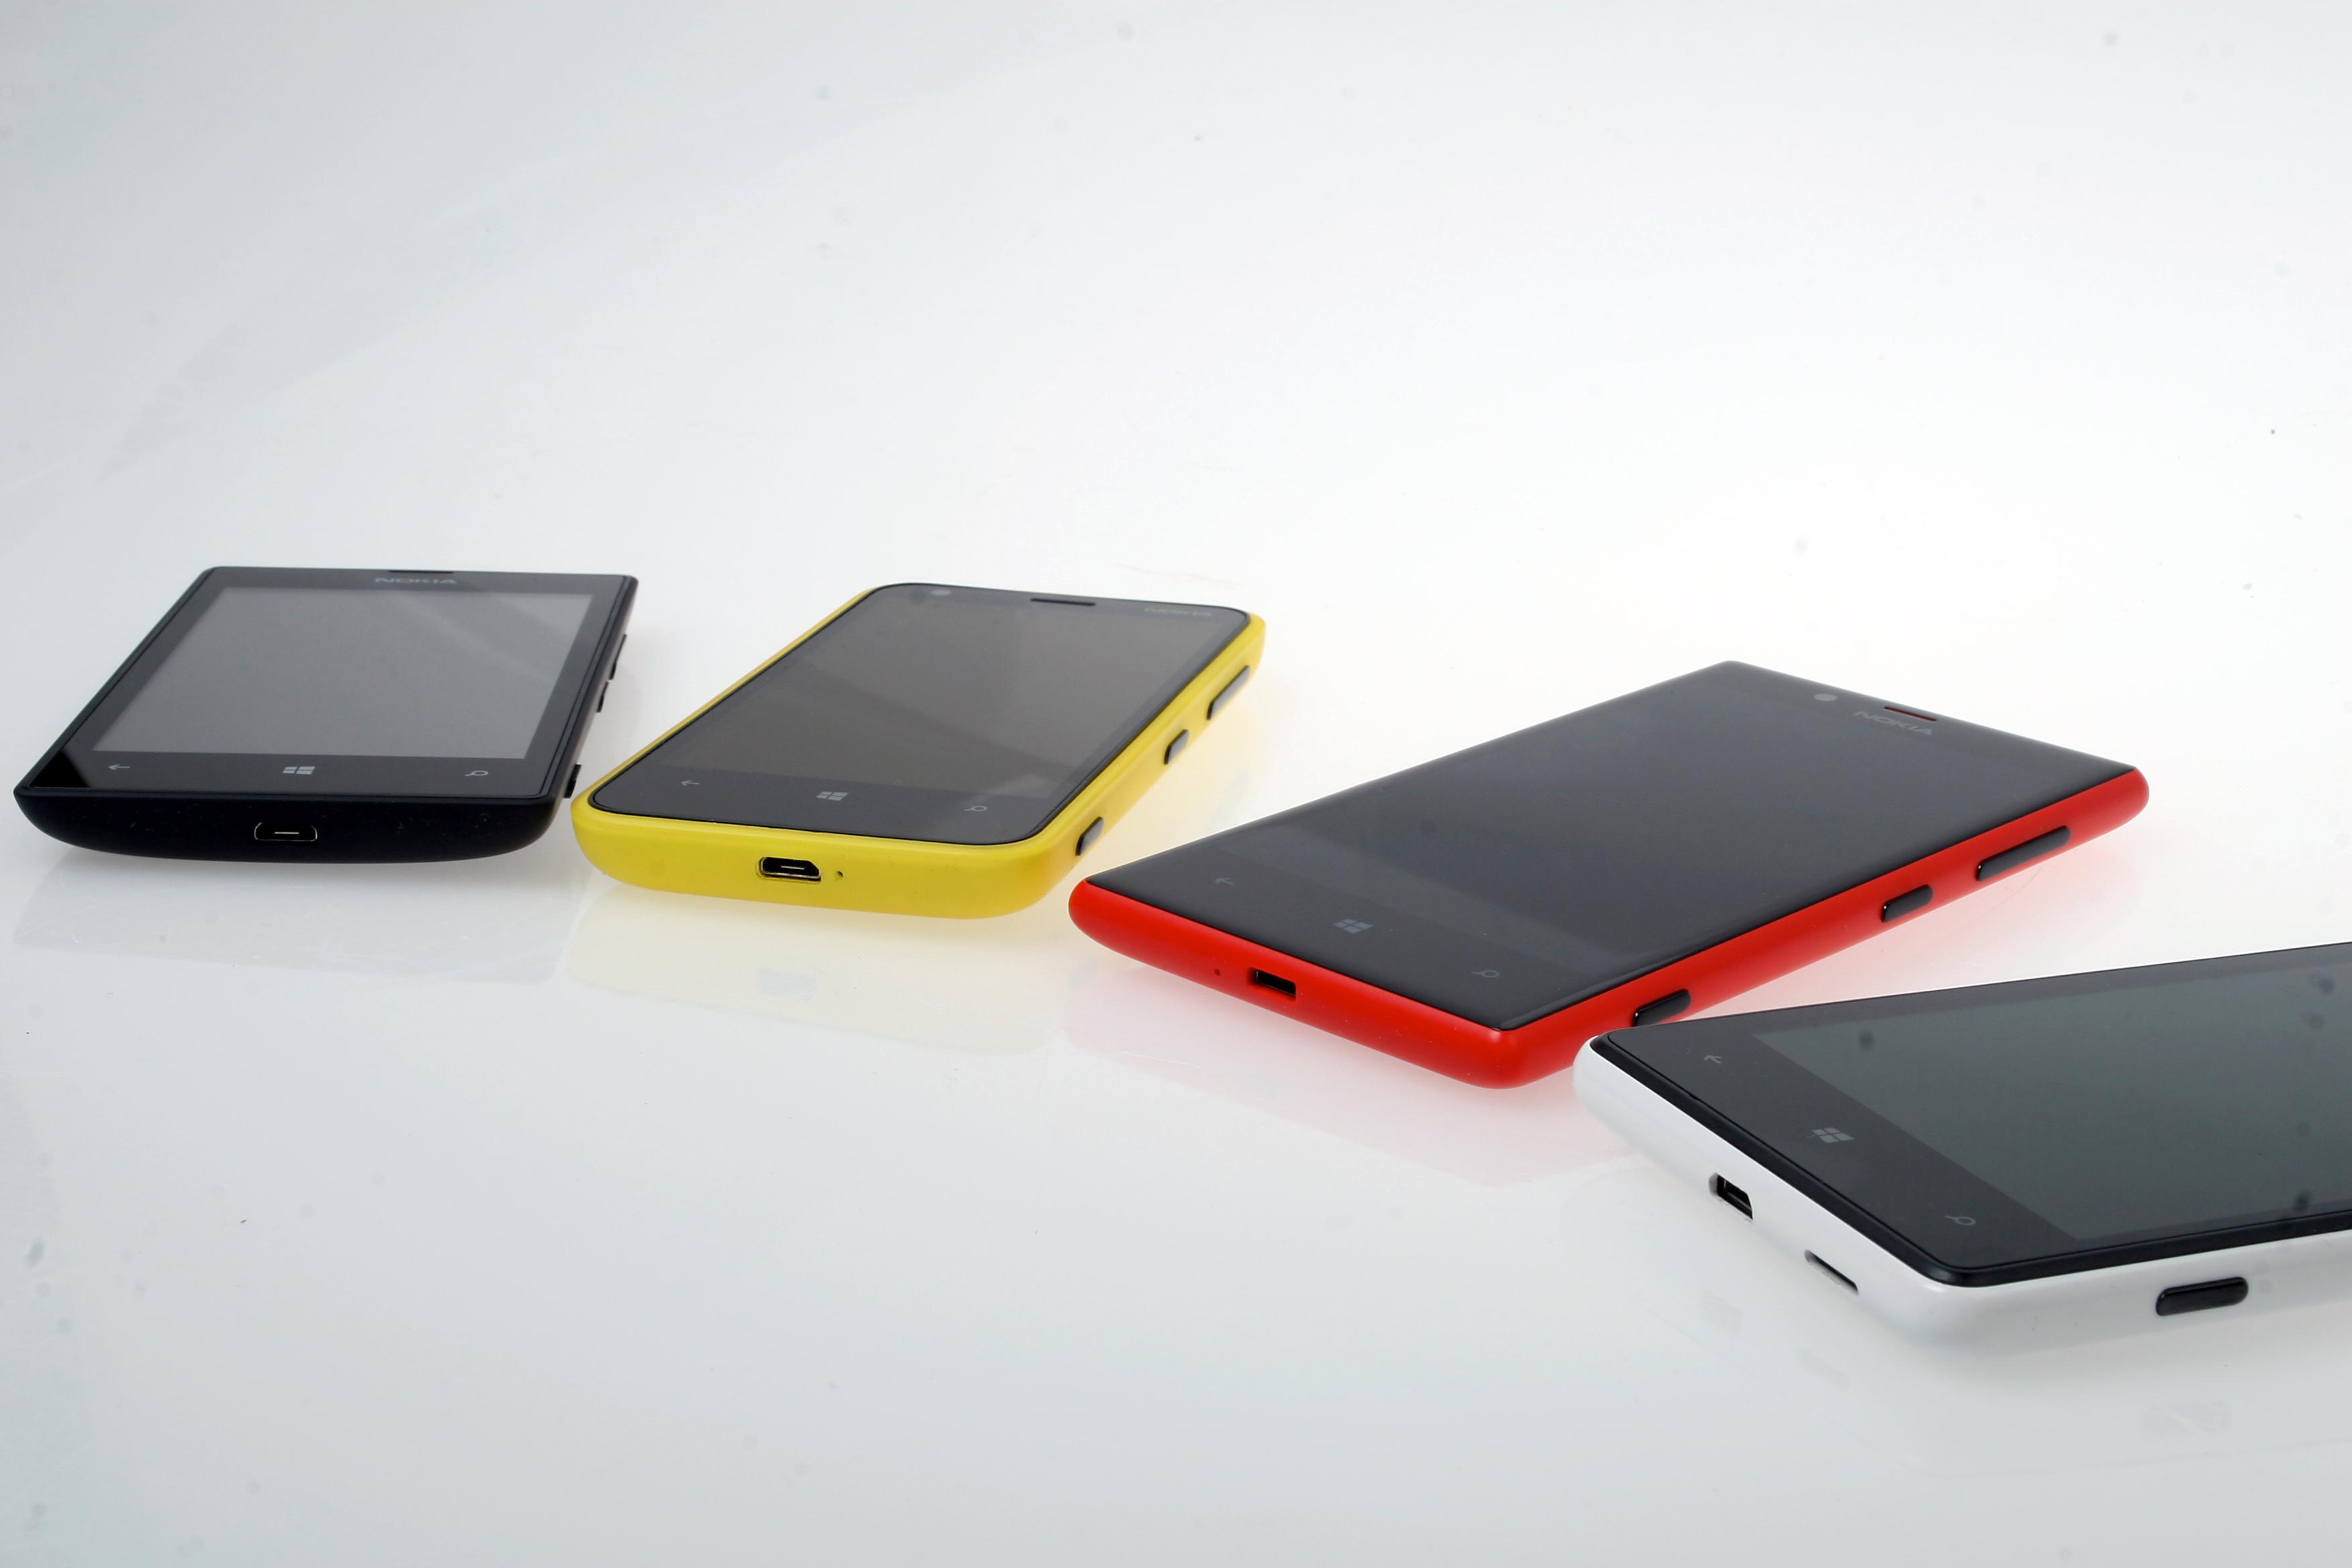 Noen av modellene i Lumia-serien. Fra venstre: Lumia 520, 620, 720 og 820. Lumia 920 var ikke tilstede da bildet ble tatt.